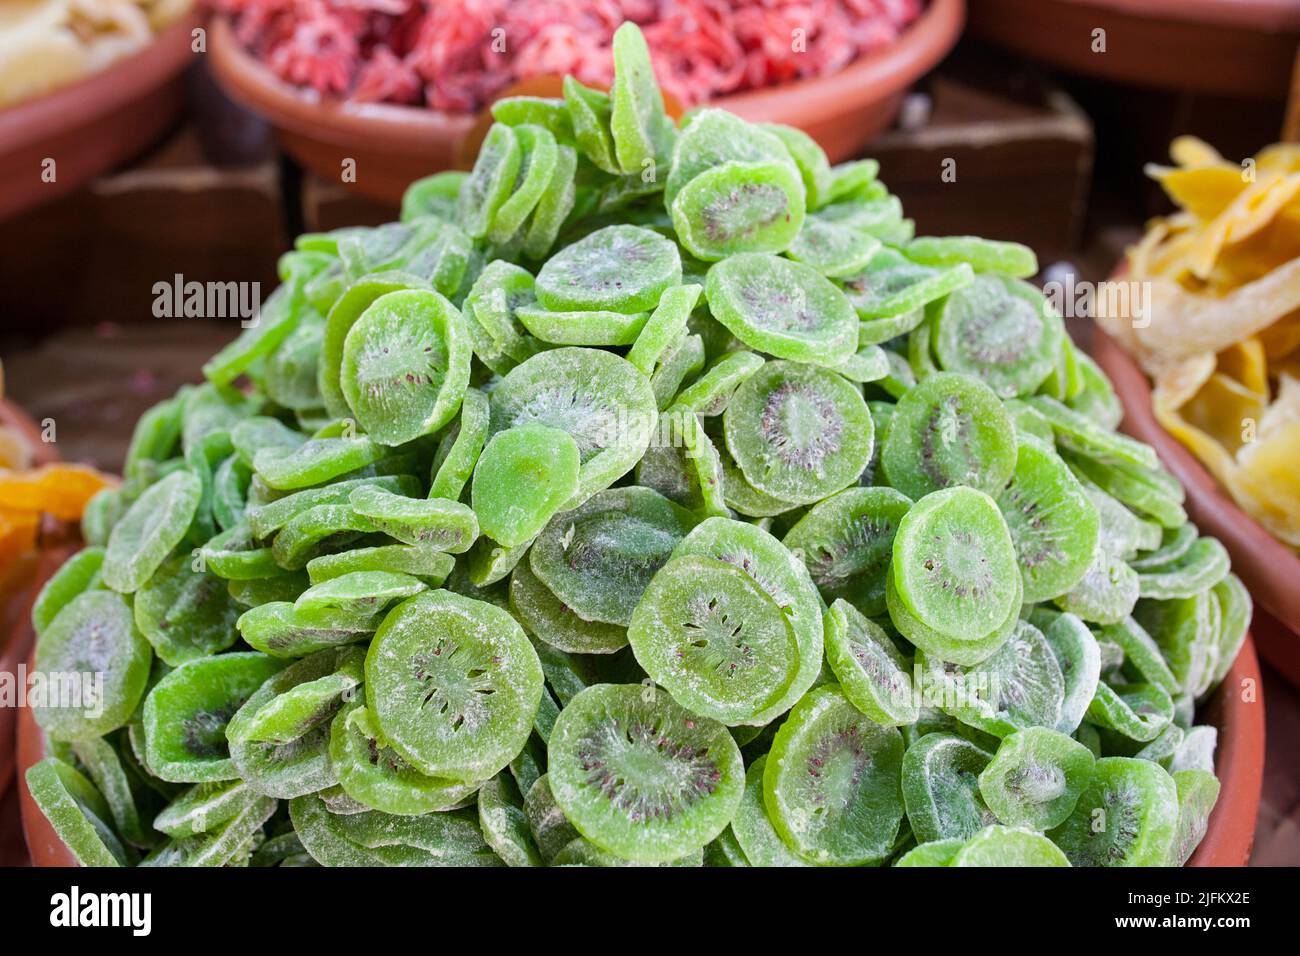 Tazón con kiwis secos. Los cortes se muestran en el puesto del mercado callejero. Foto de stock